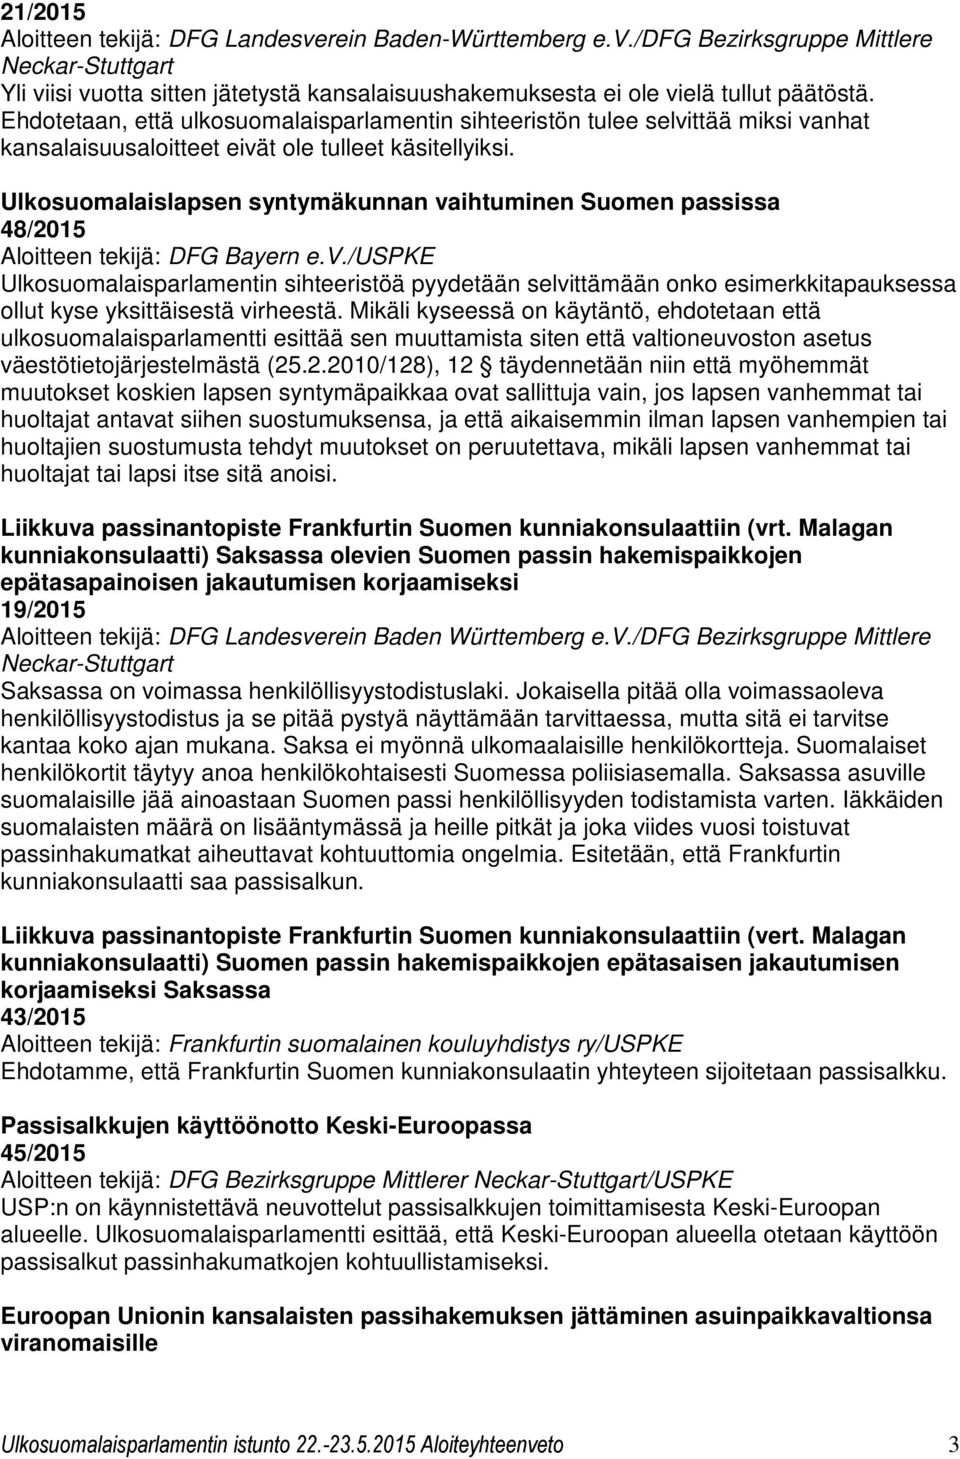 Ulkosuomalaislapsen syntymäkunnan vaihtuminen Suomen passissa 48/2015 Aloitteen tekijä: DFG Bayern e.v./uspke Ulkosuomalaisparlamentin sihteeristöä pyydetään selvittämään onko esimerkkitapauksessa ollut kyse yksittäisestä virheestä.